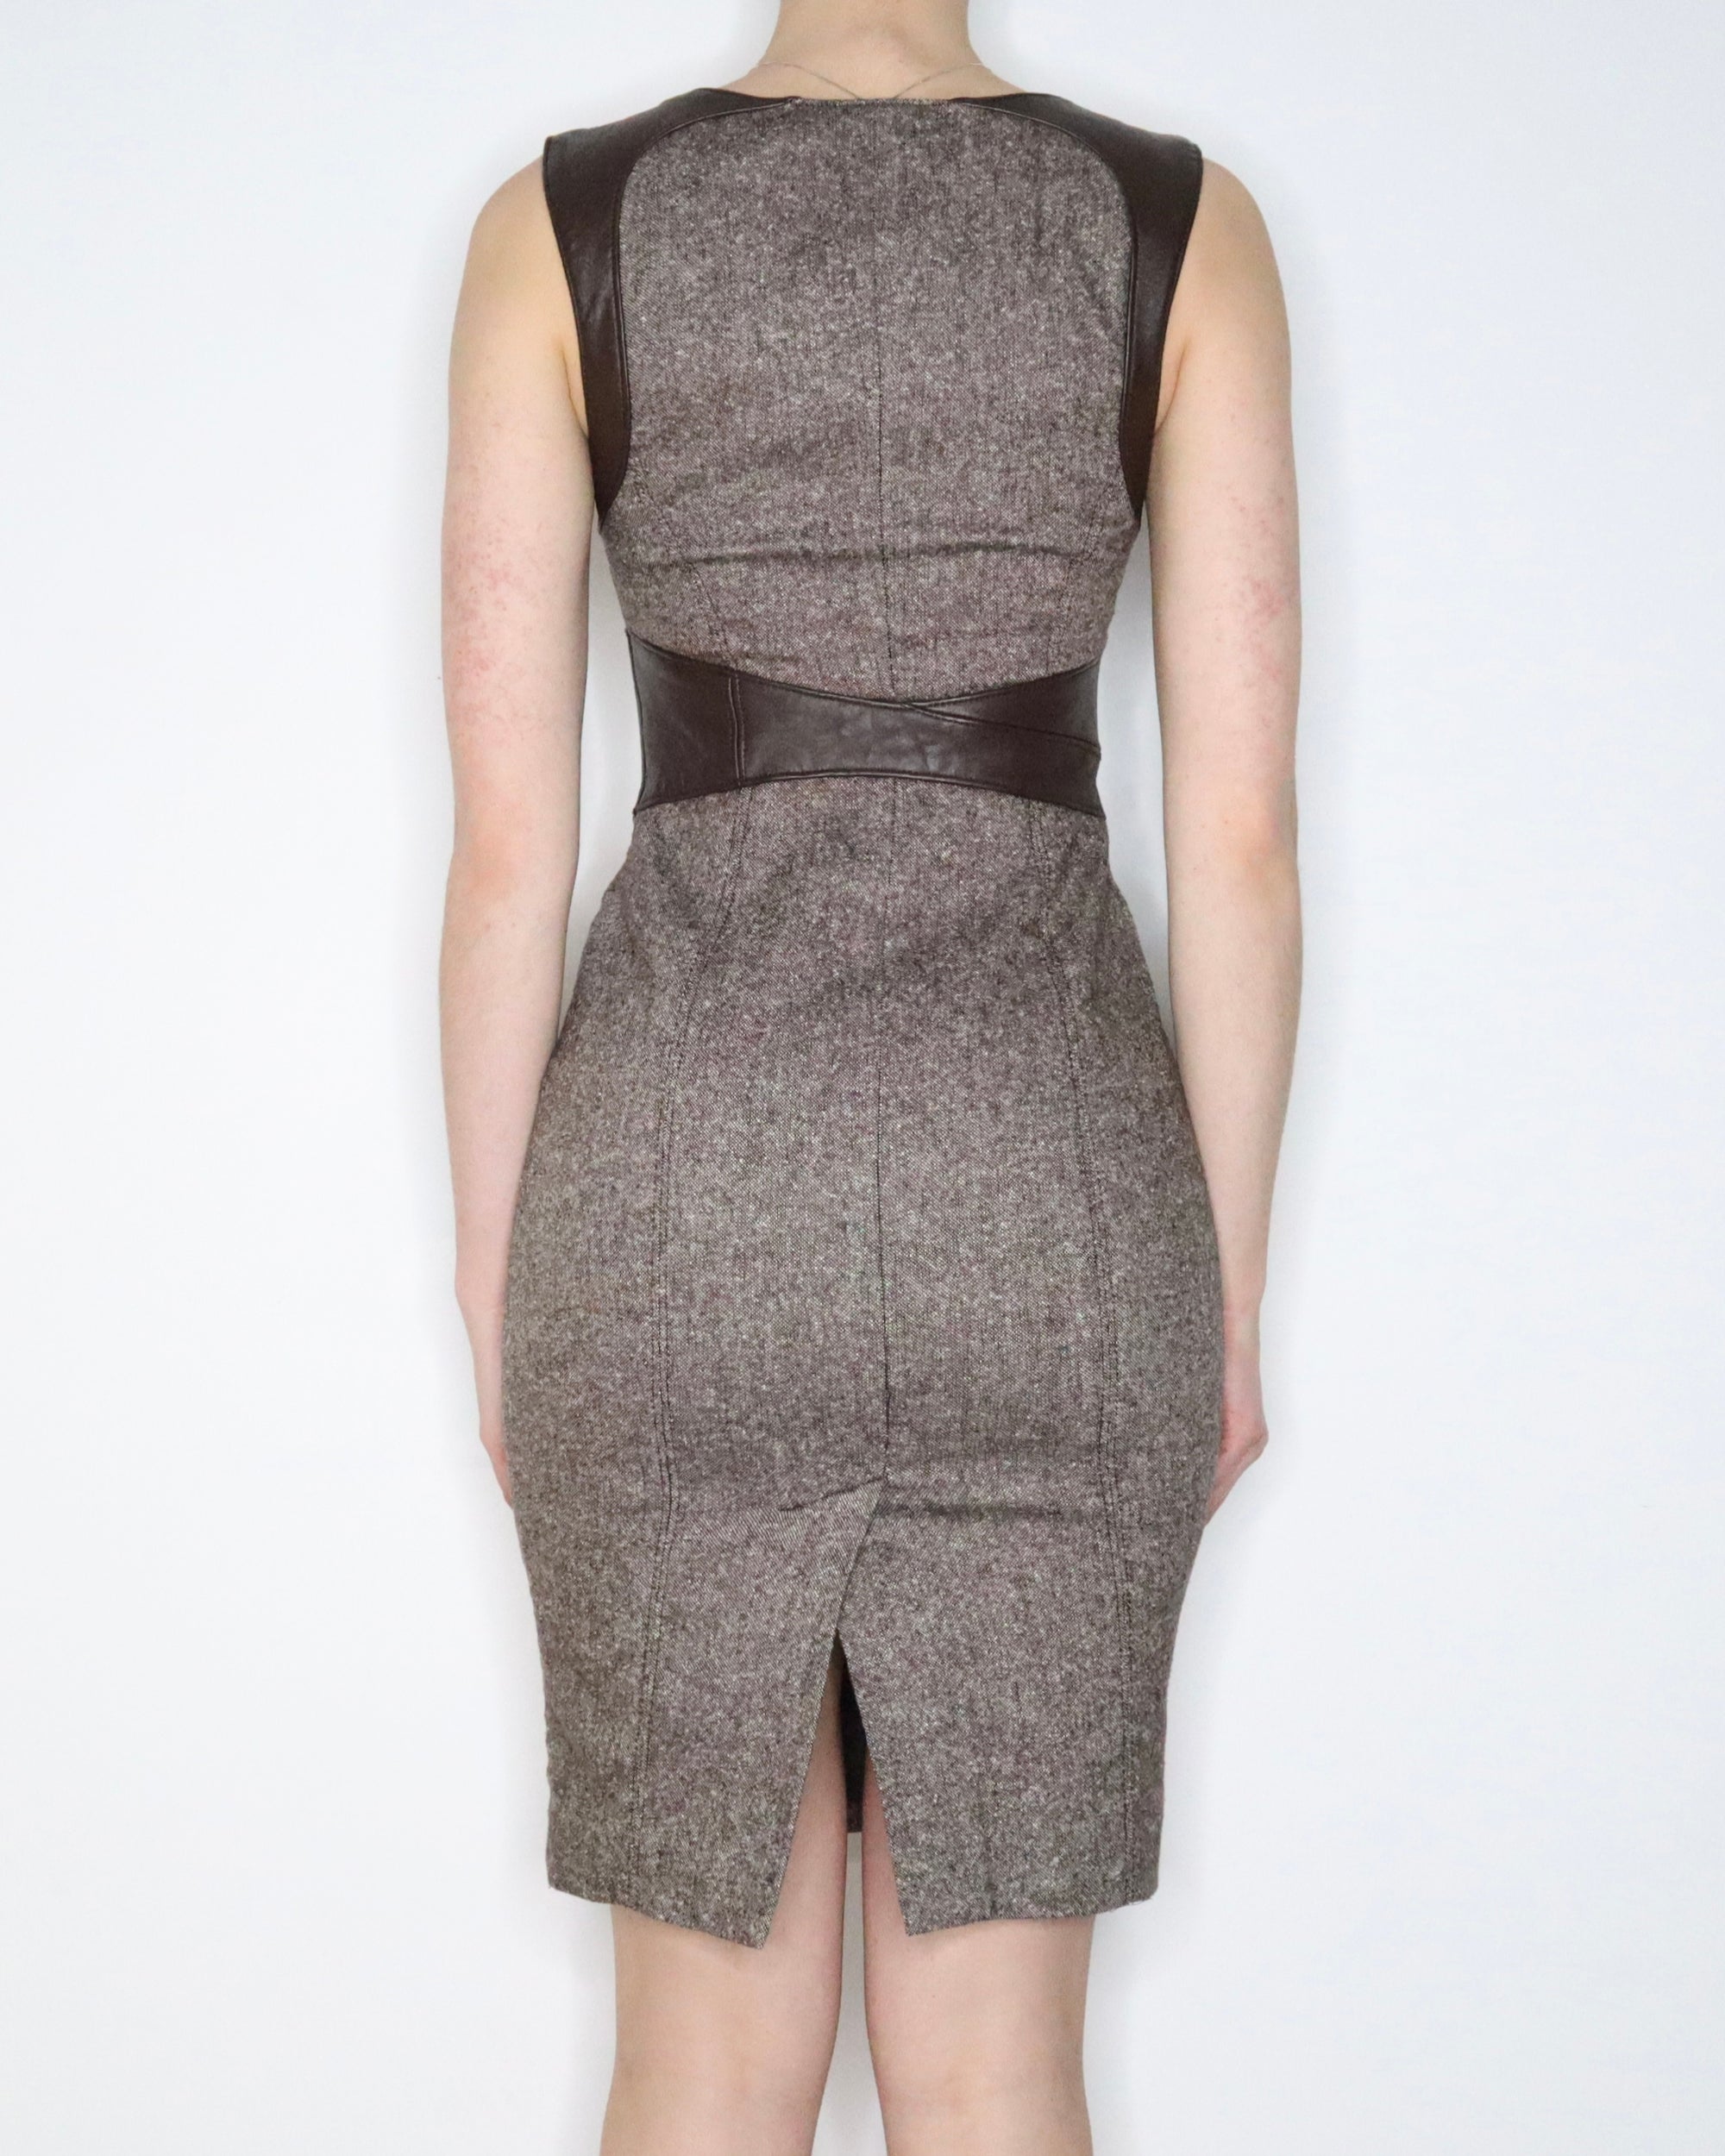 Bebe Brown Tweed Corset Dress (XS) 